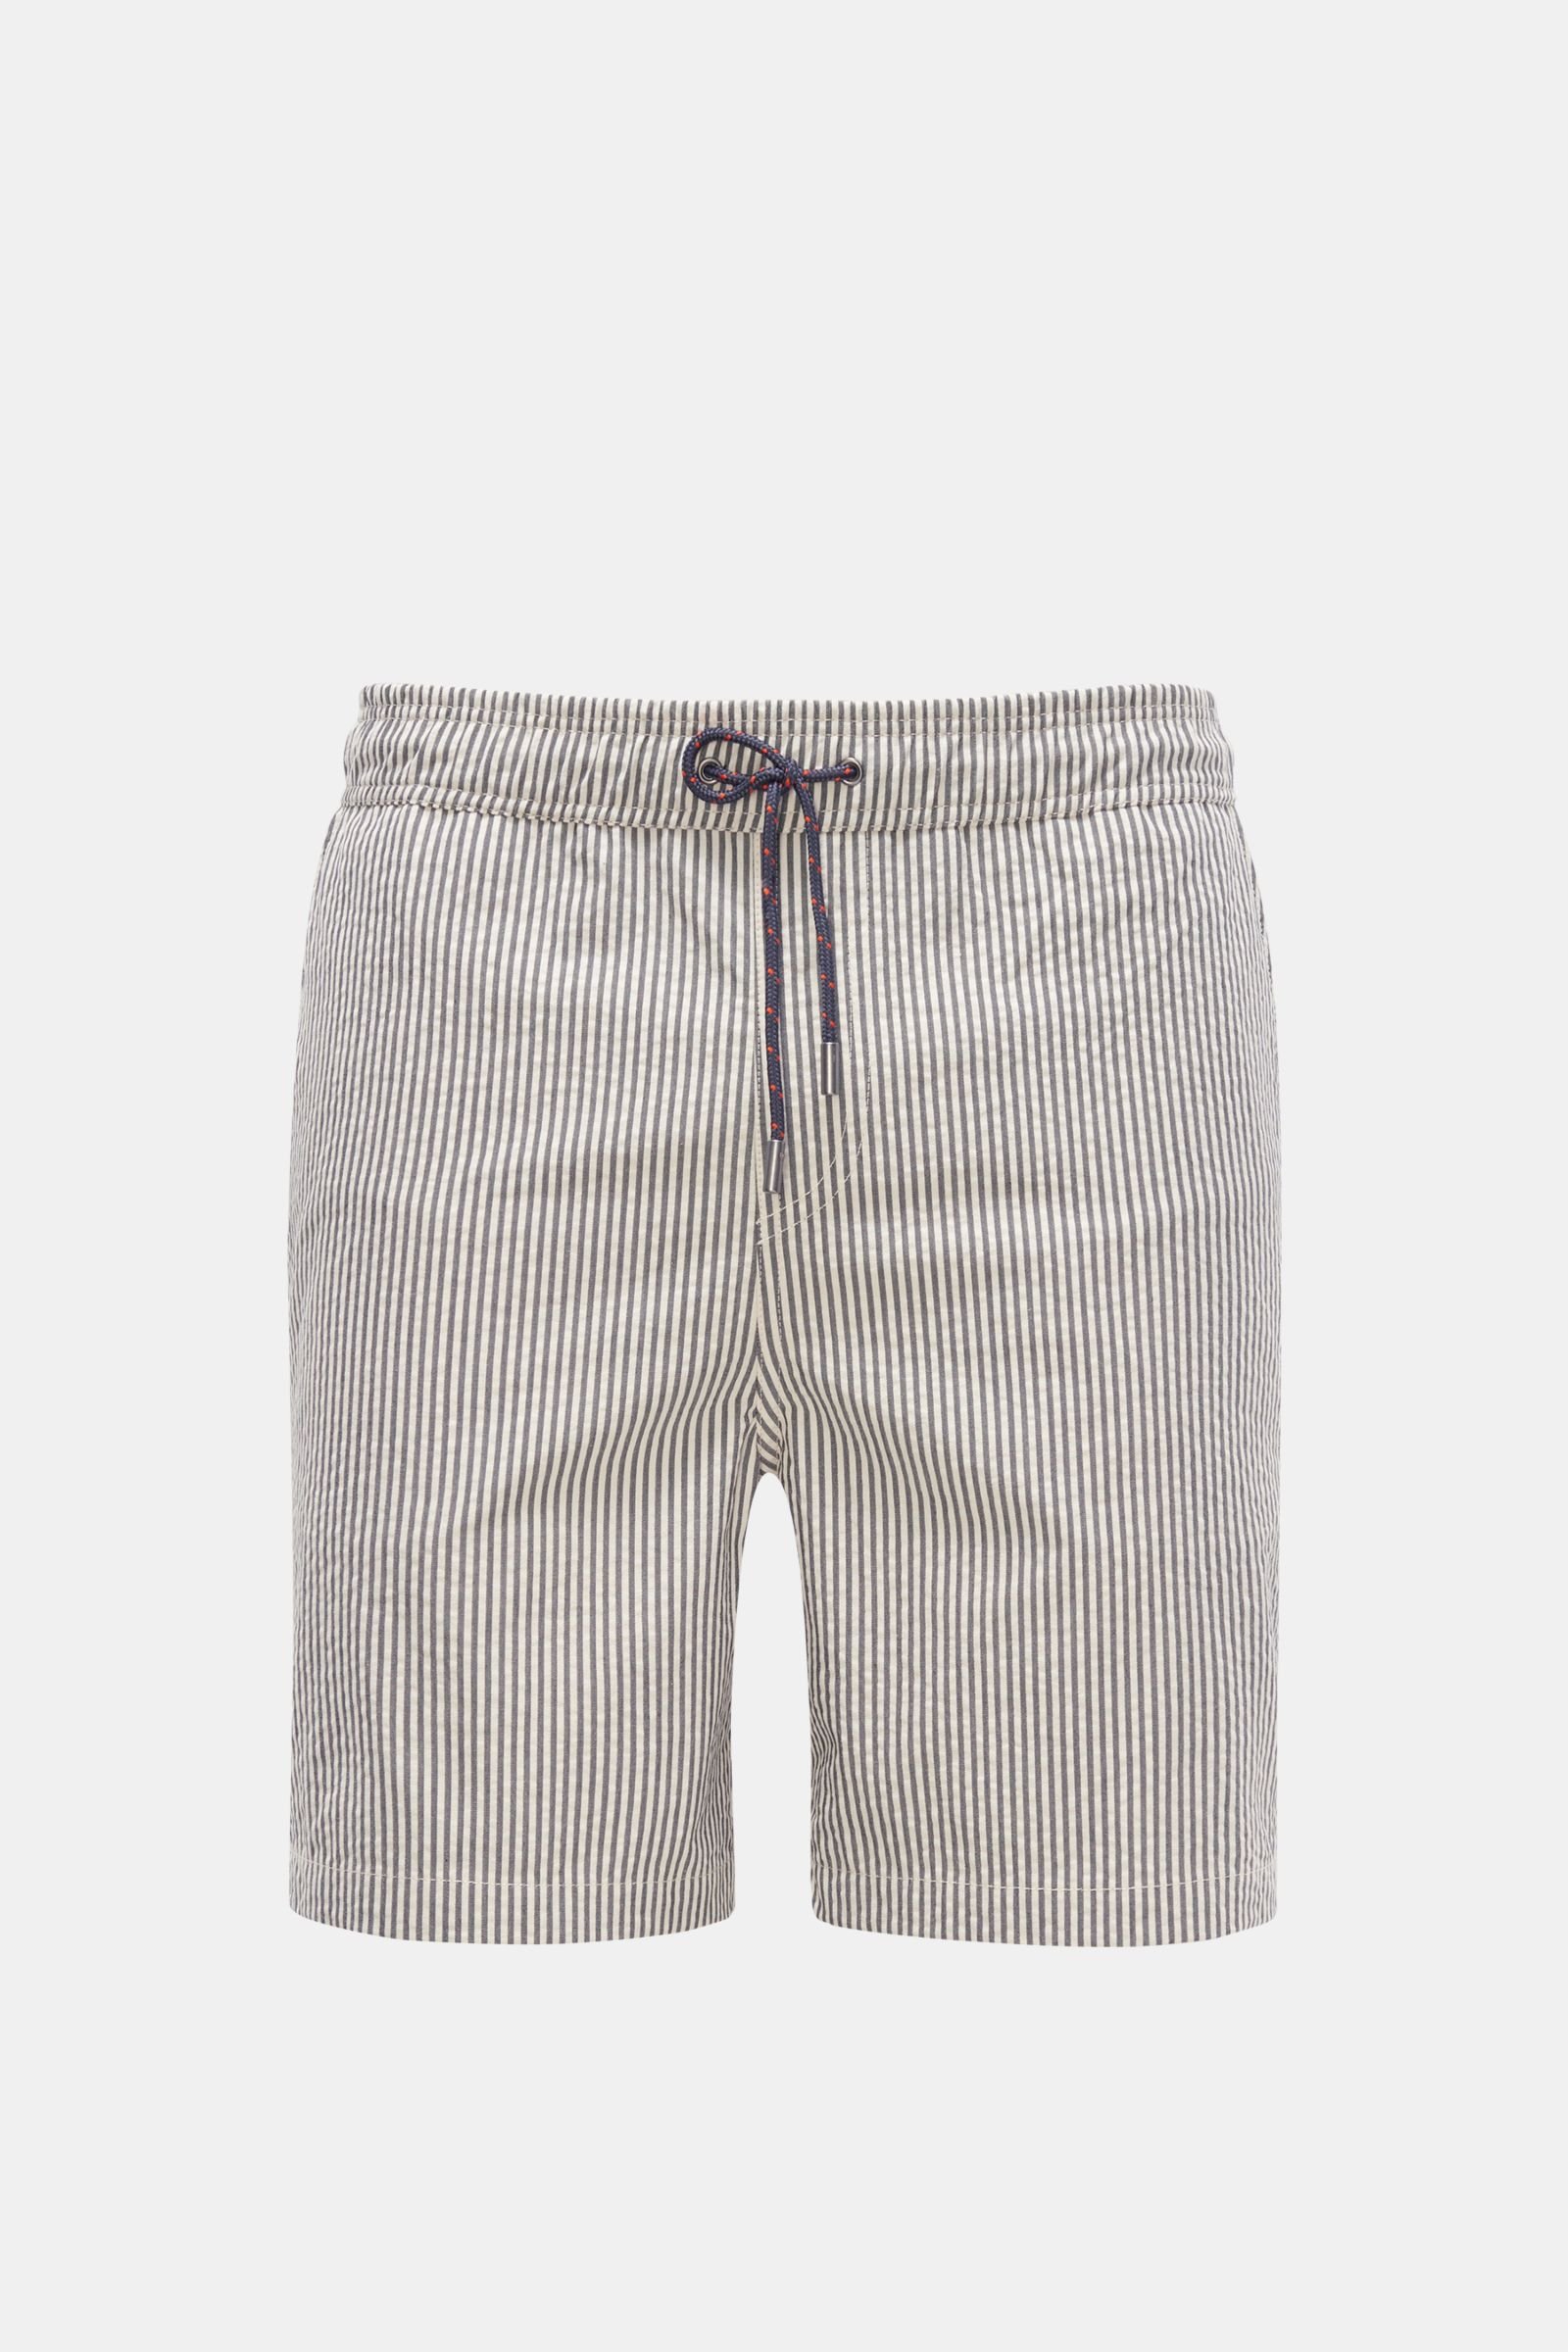 Seersucker shorts dark grey/off-white striped